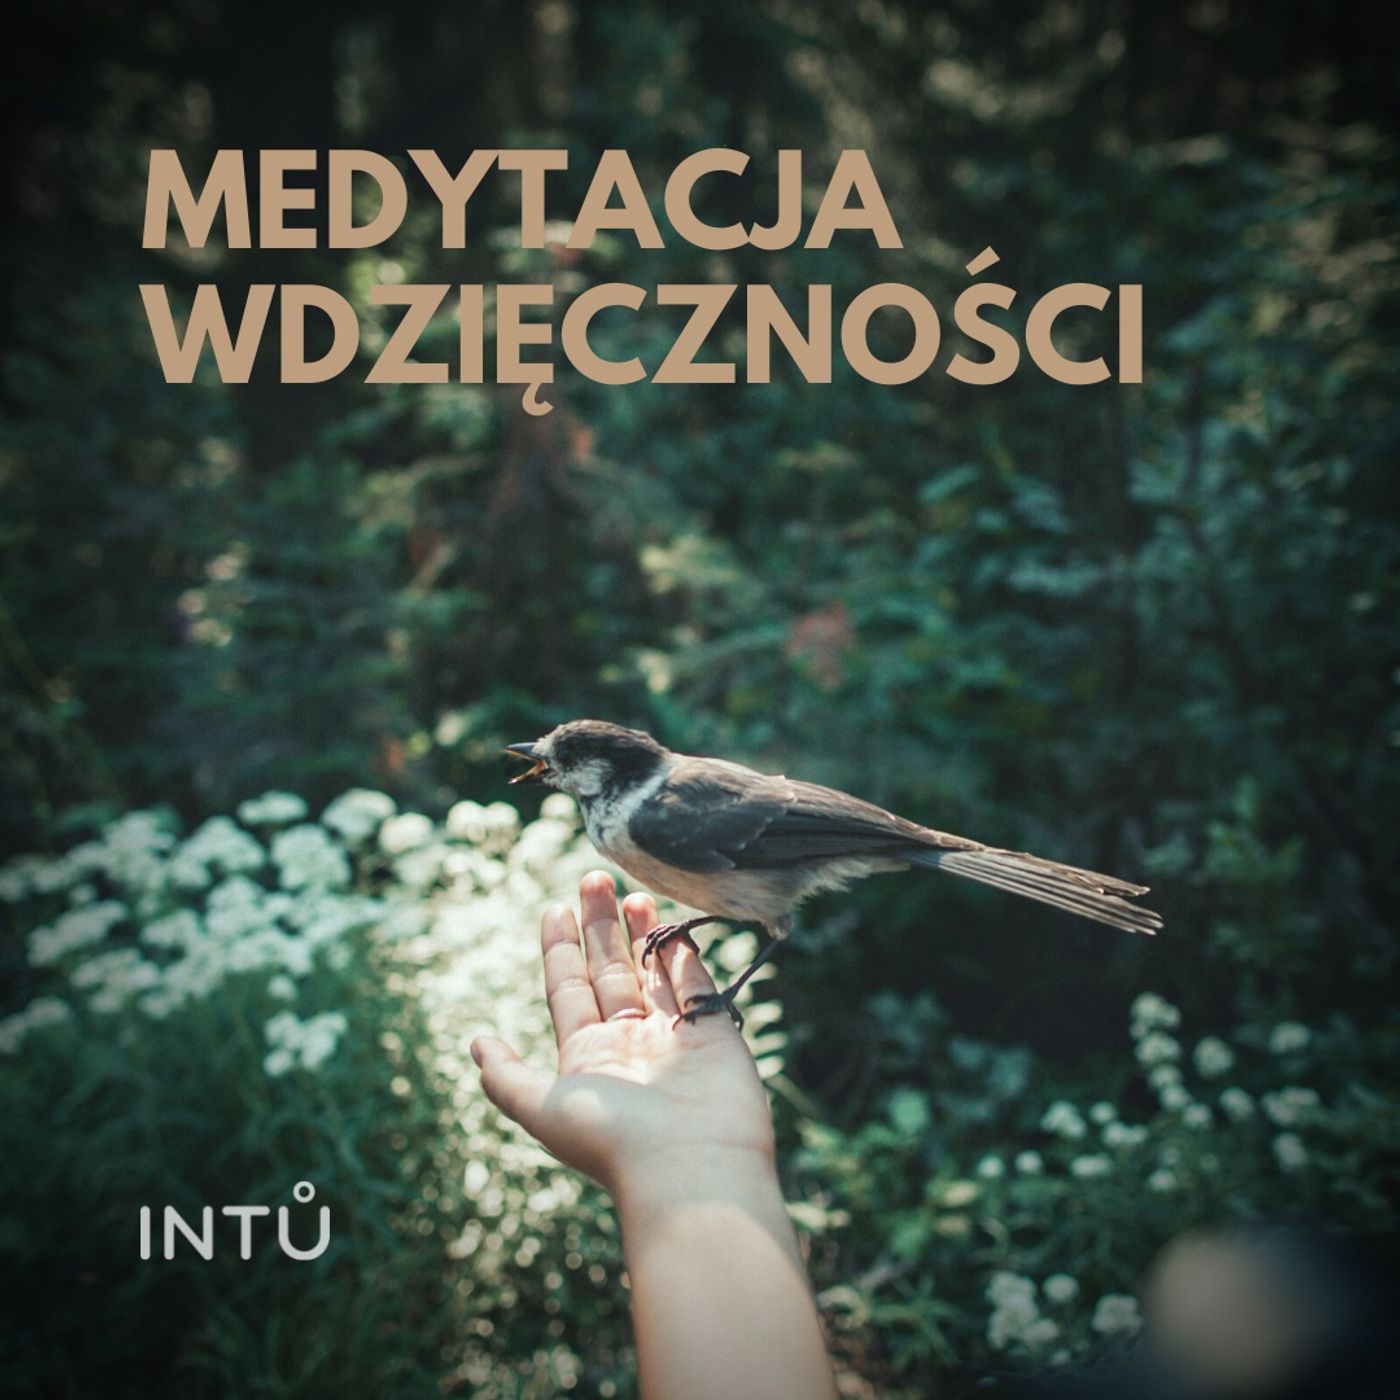 Medytacja wdzięczności - INTU